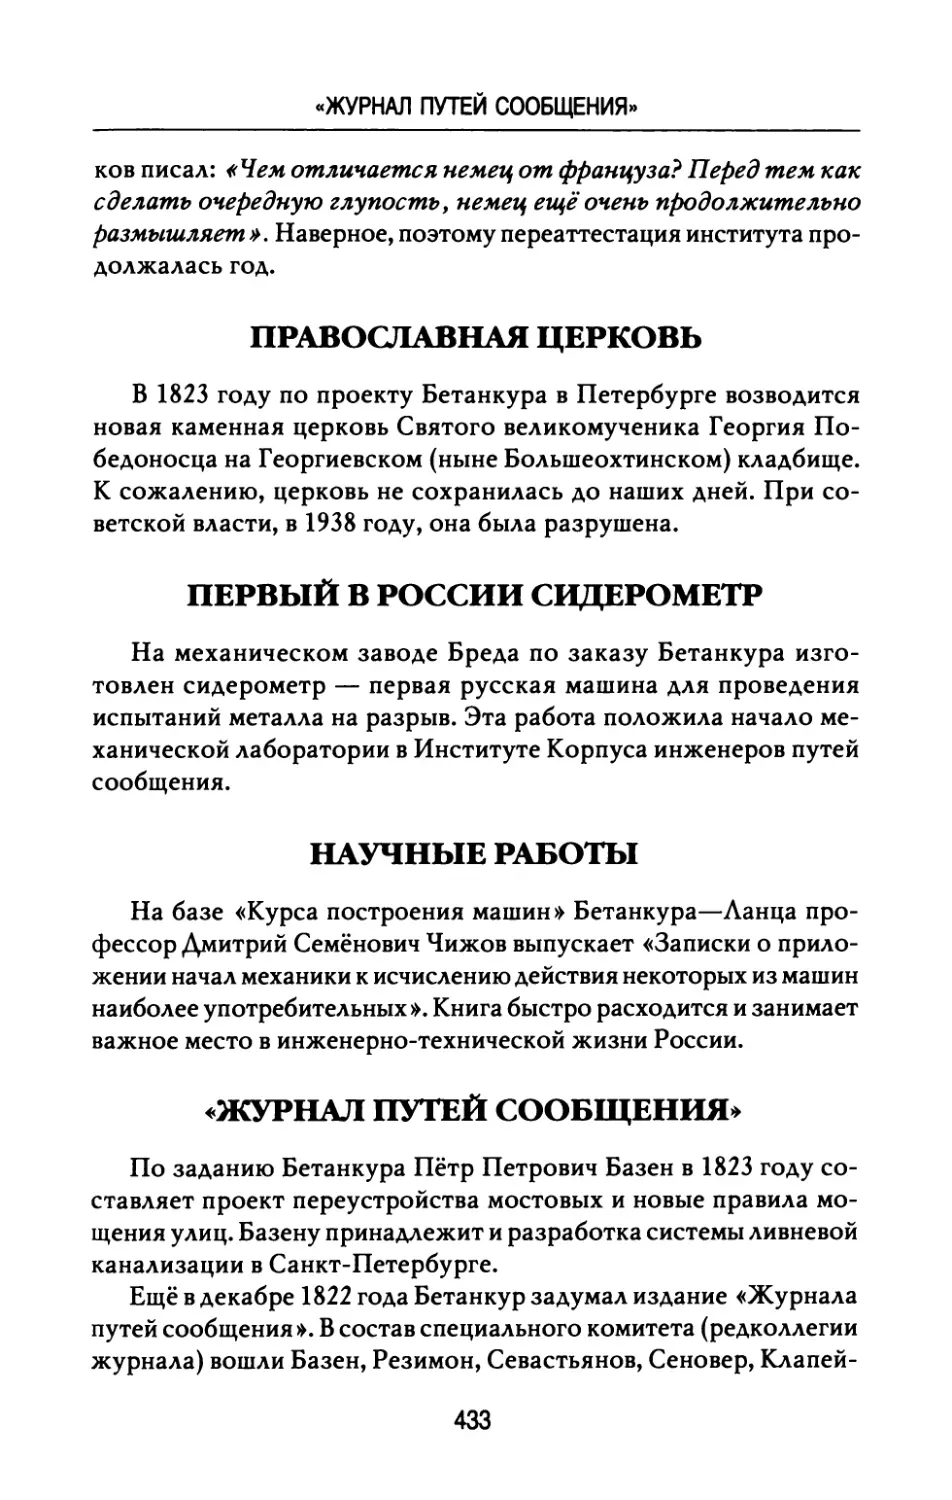 Православная  церковь
Первый  в  России  сидерометр
Научные  работы
«Журнал  путей  сообщения»